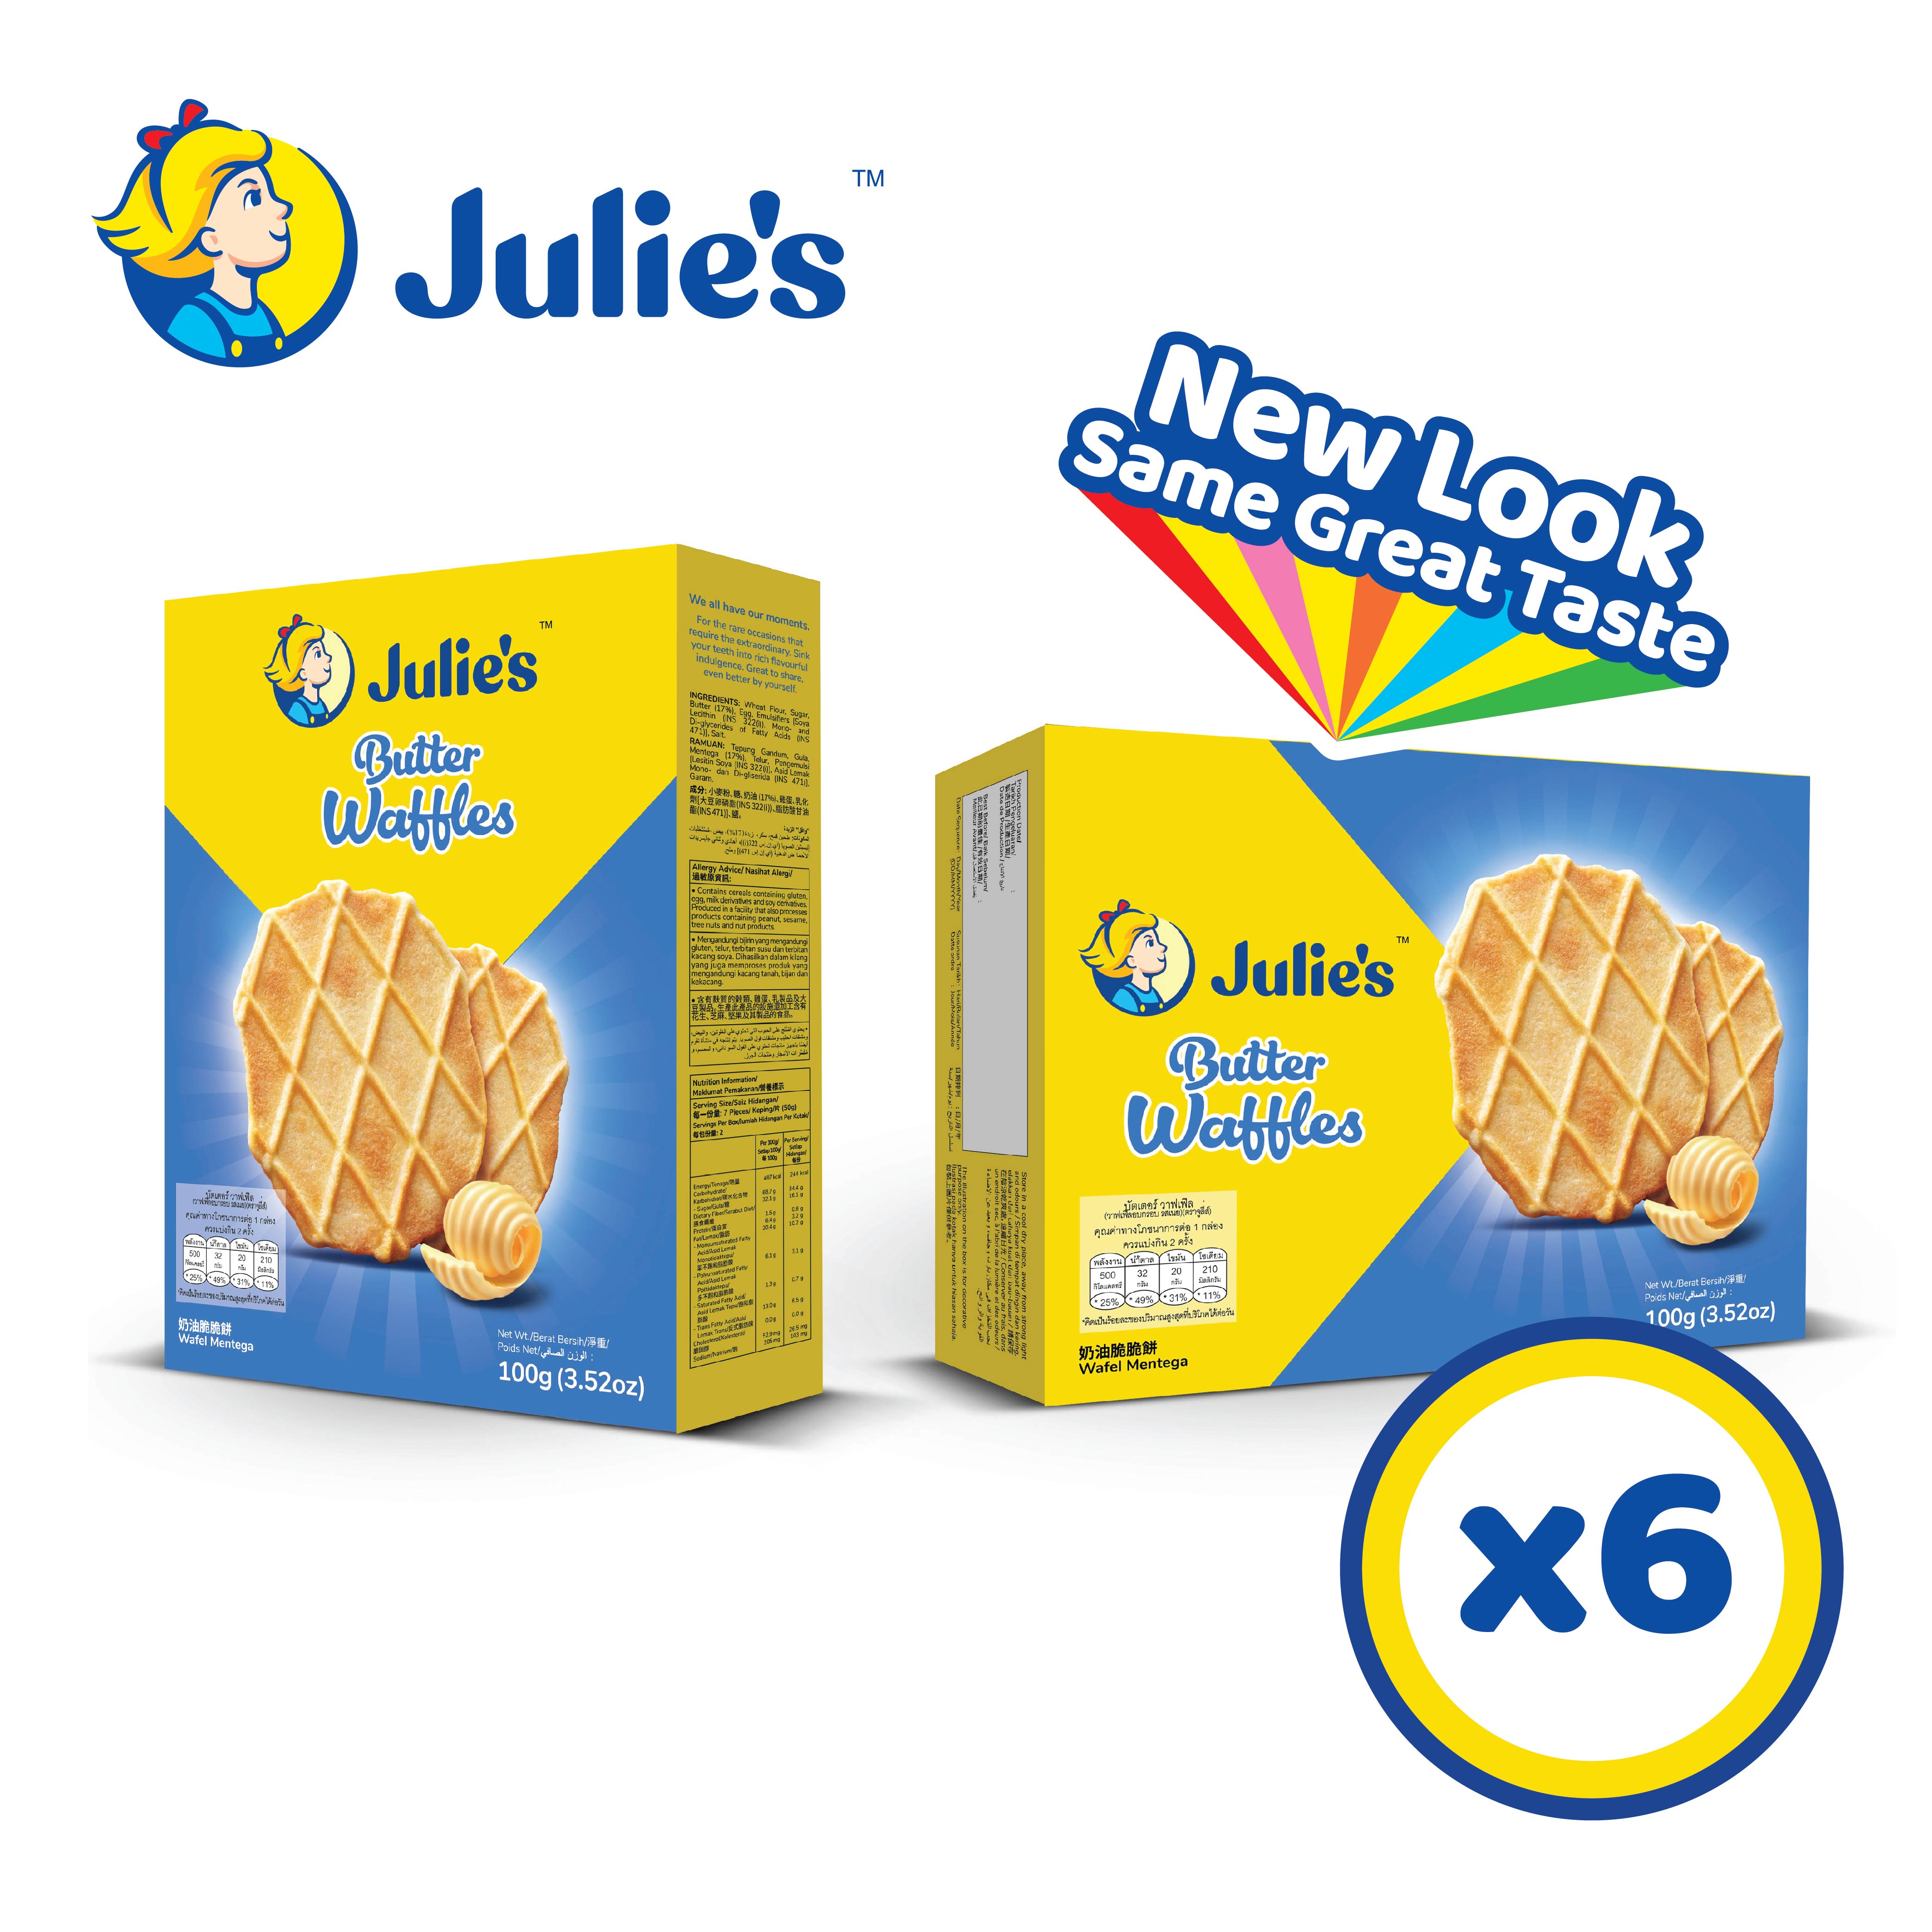 Julie’s Butter Waffles 100g x 6 pack